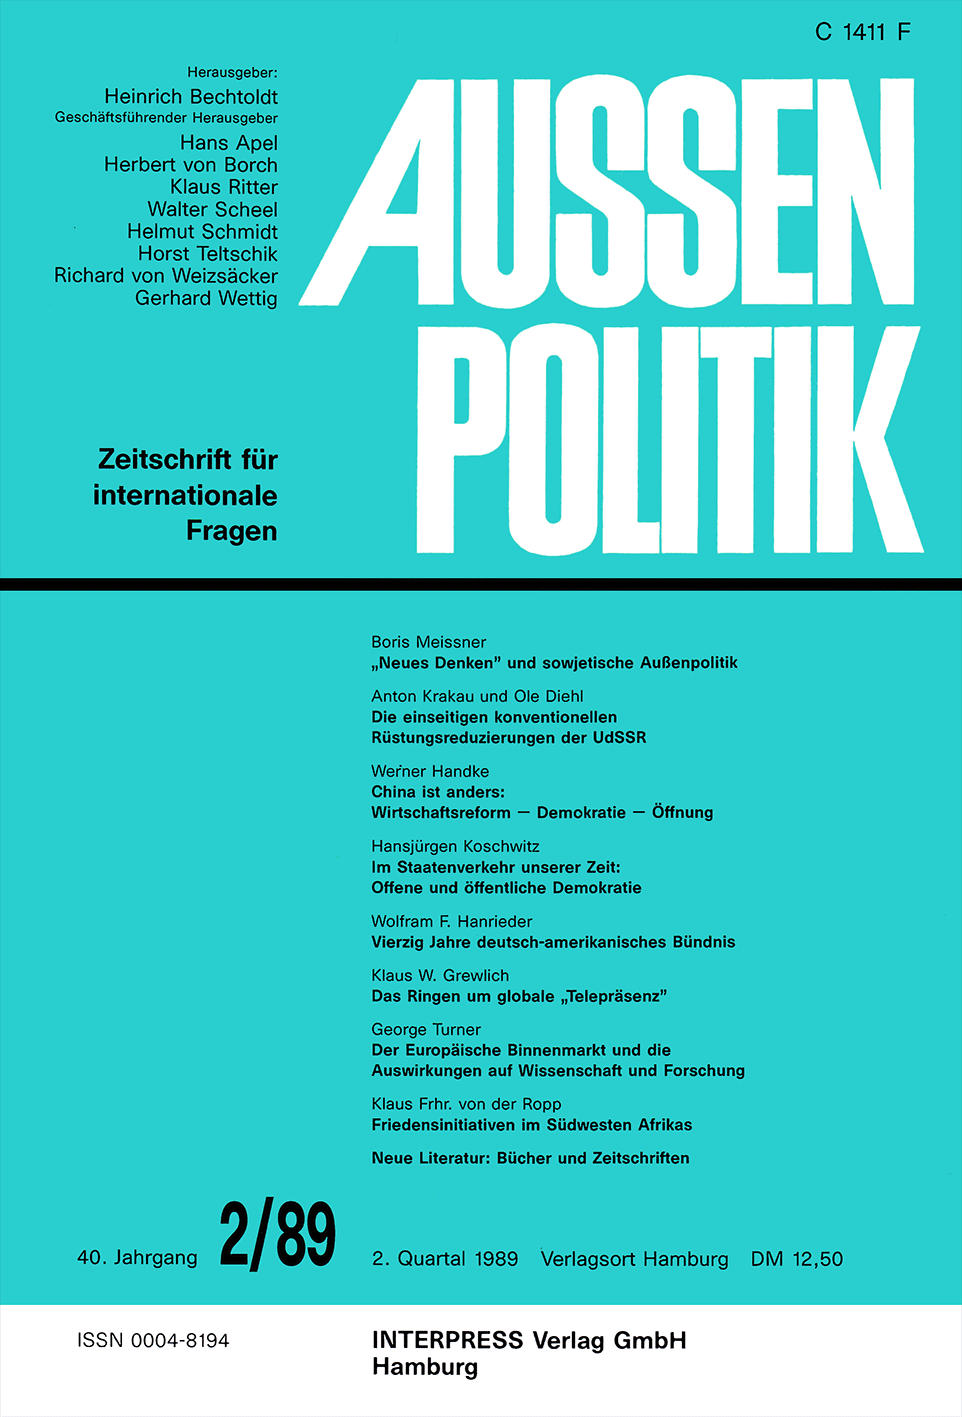 Aussenpolitik, issue 2/89, vol. 40, no. 2, 1989, p. 193-205;